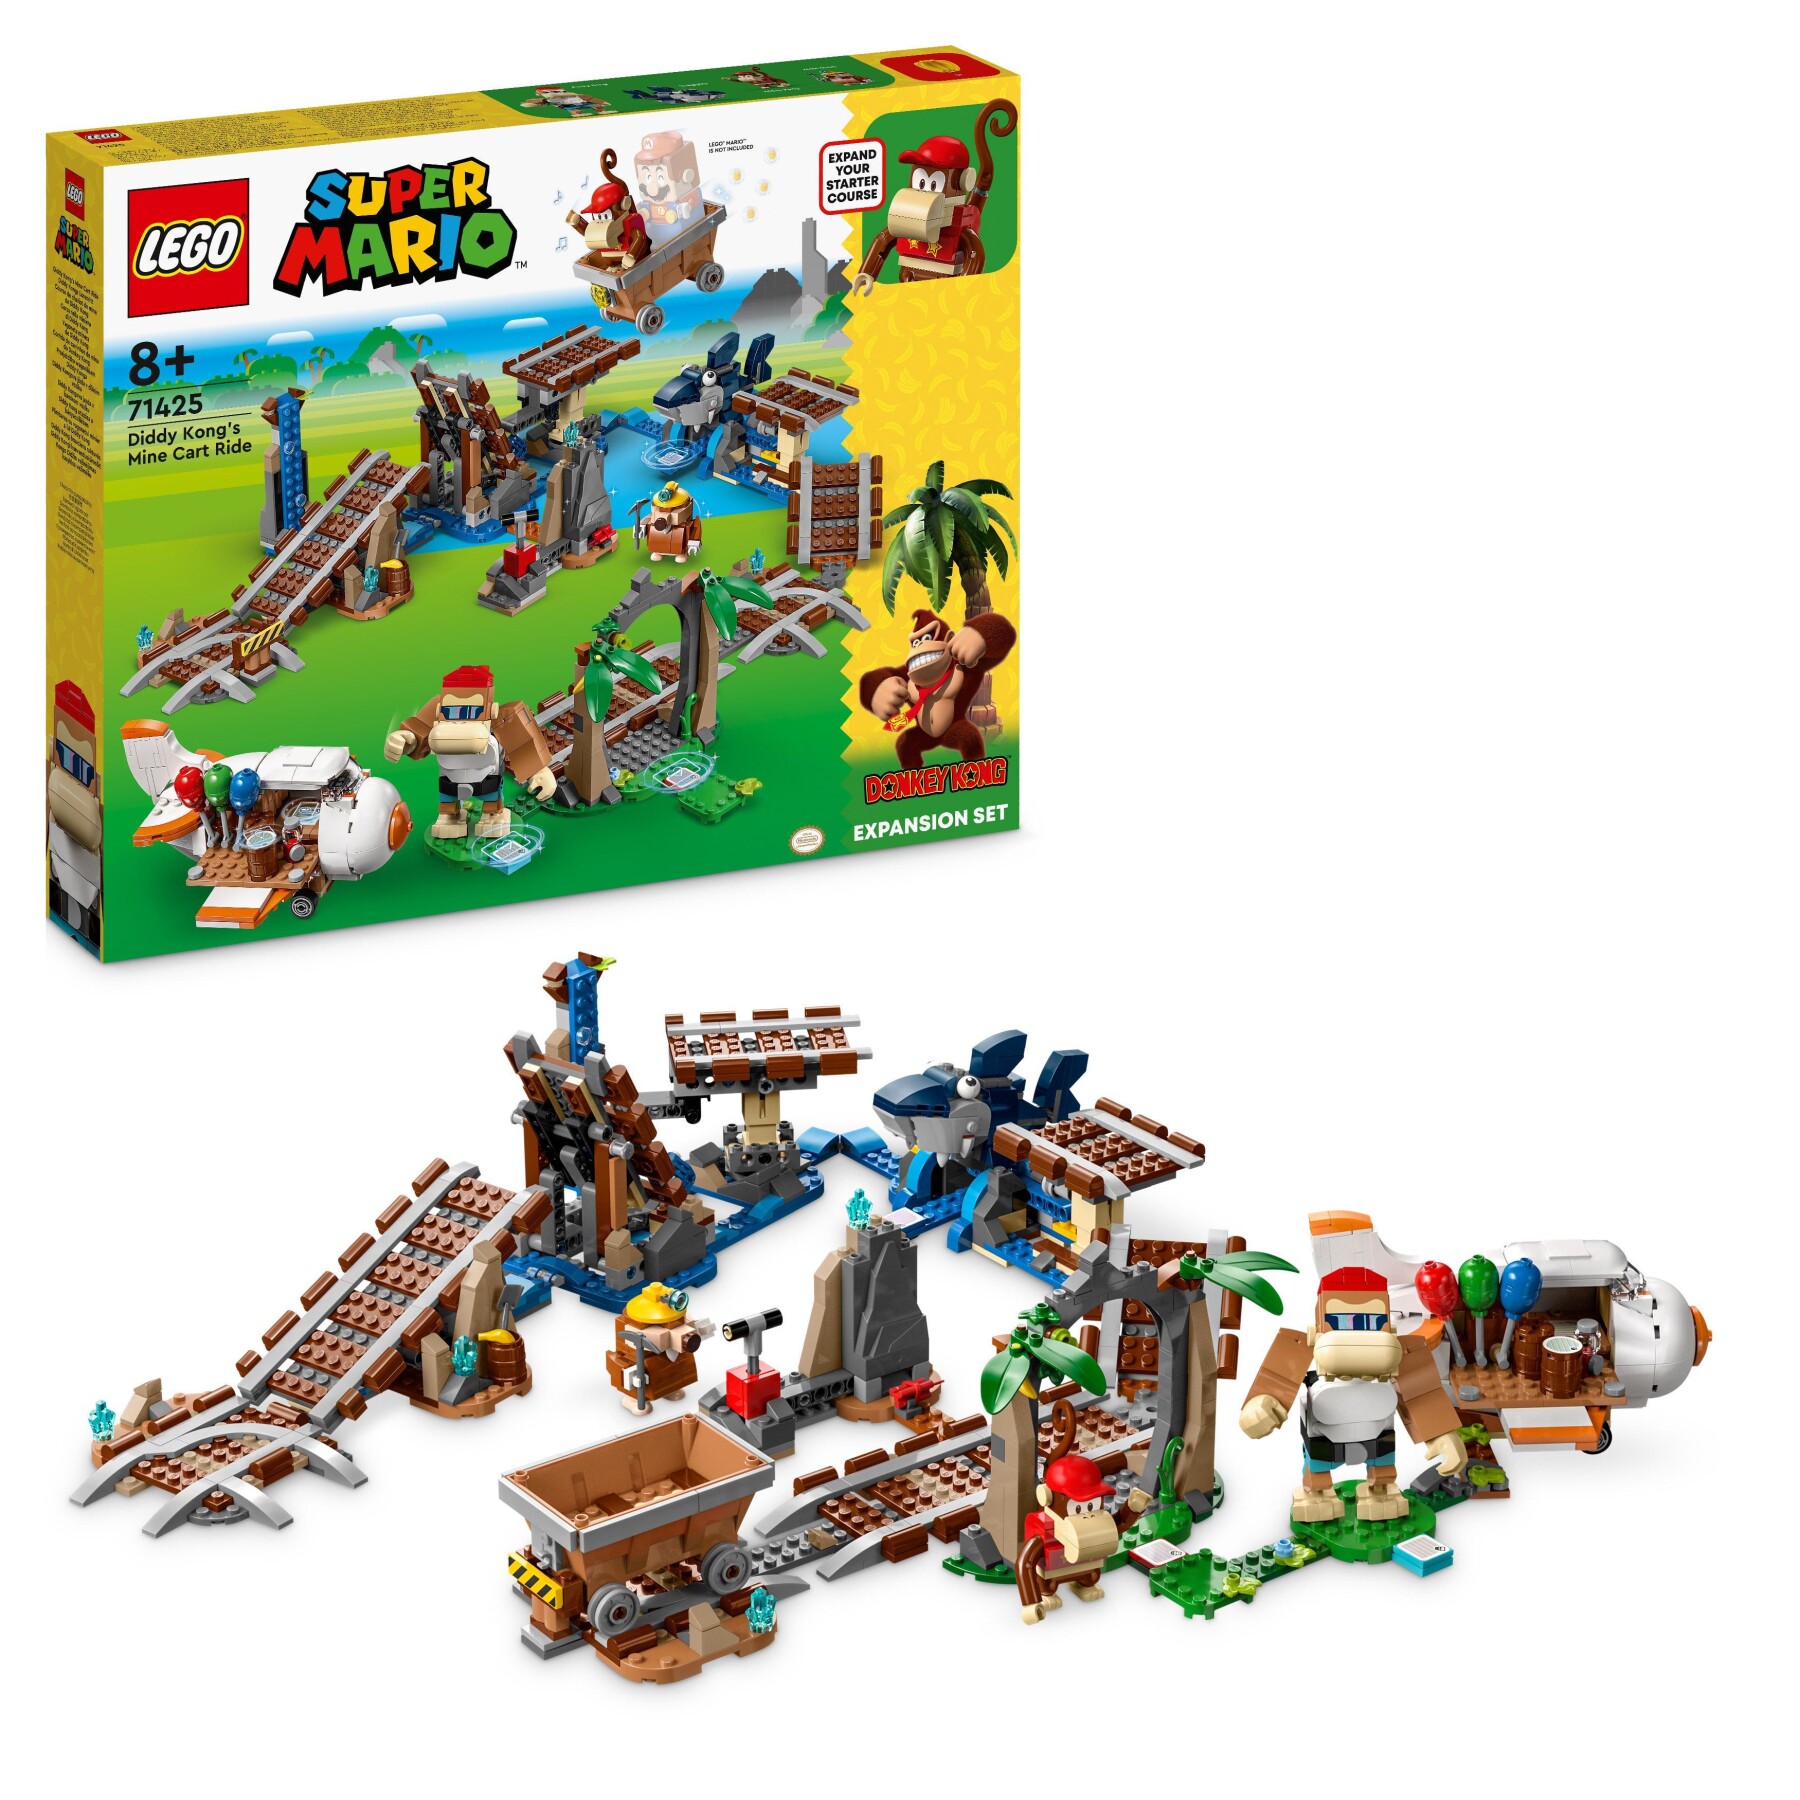 Lego super mario 71425 pack di espansione corsa nella miniera di diddy kong, livello con percorso, aereo giocattolo e 4 personaggi - LEGO® Super Mario™